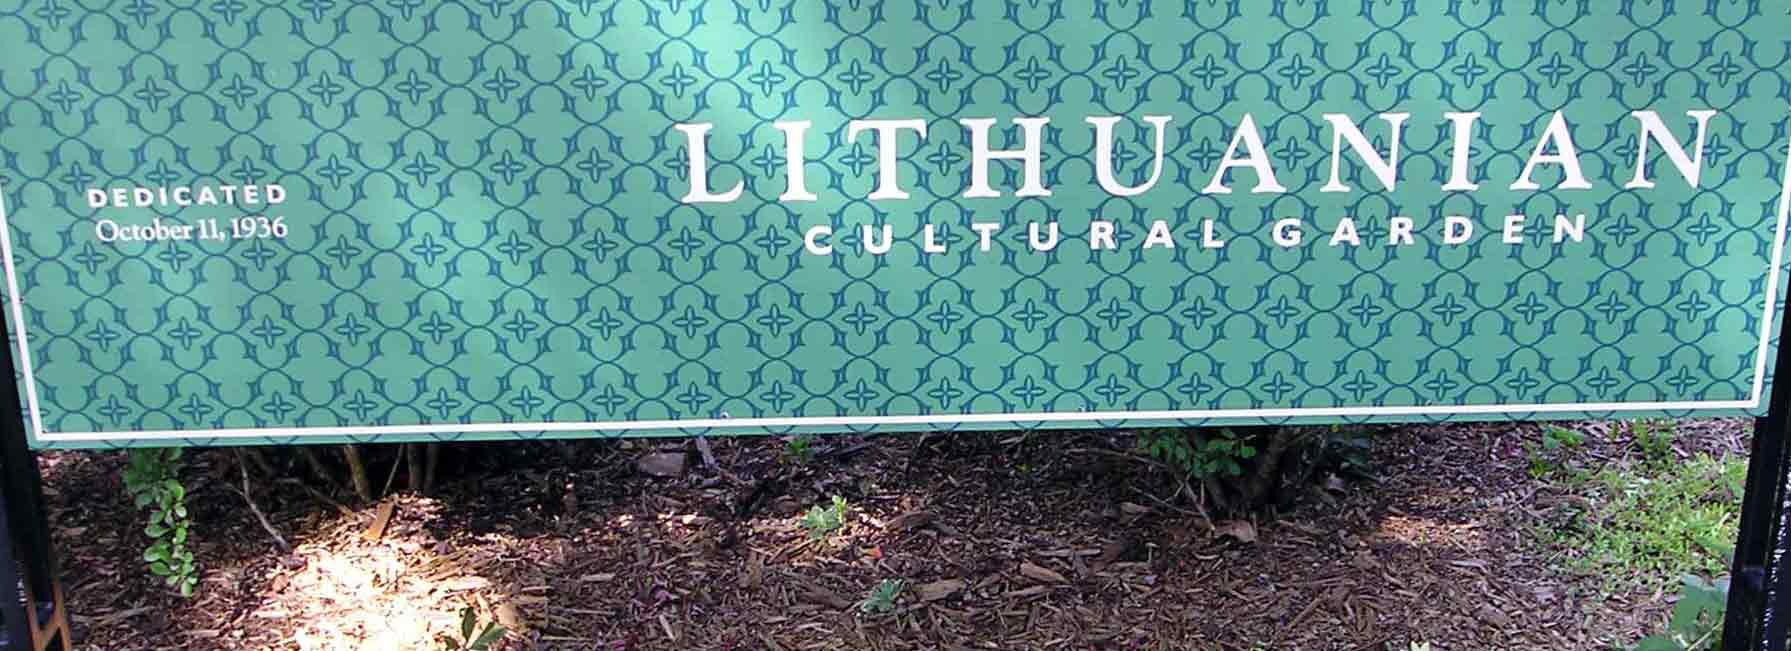 Lithuanian Cultural Garden sign